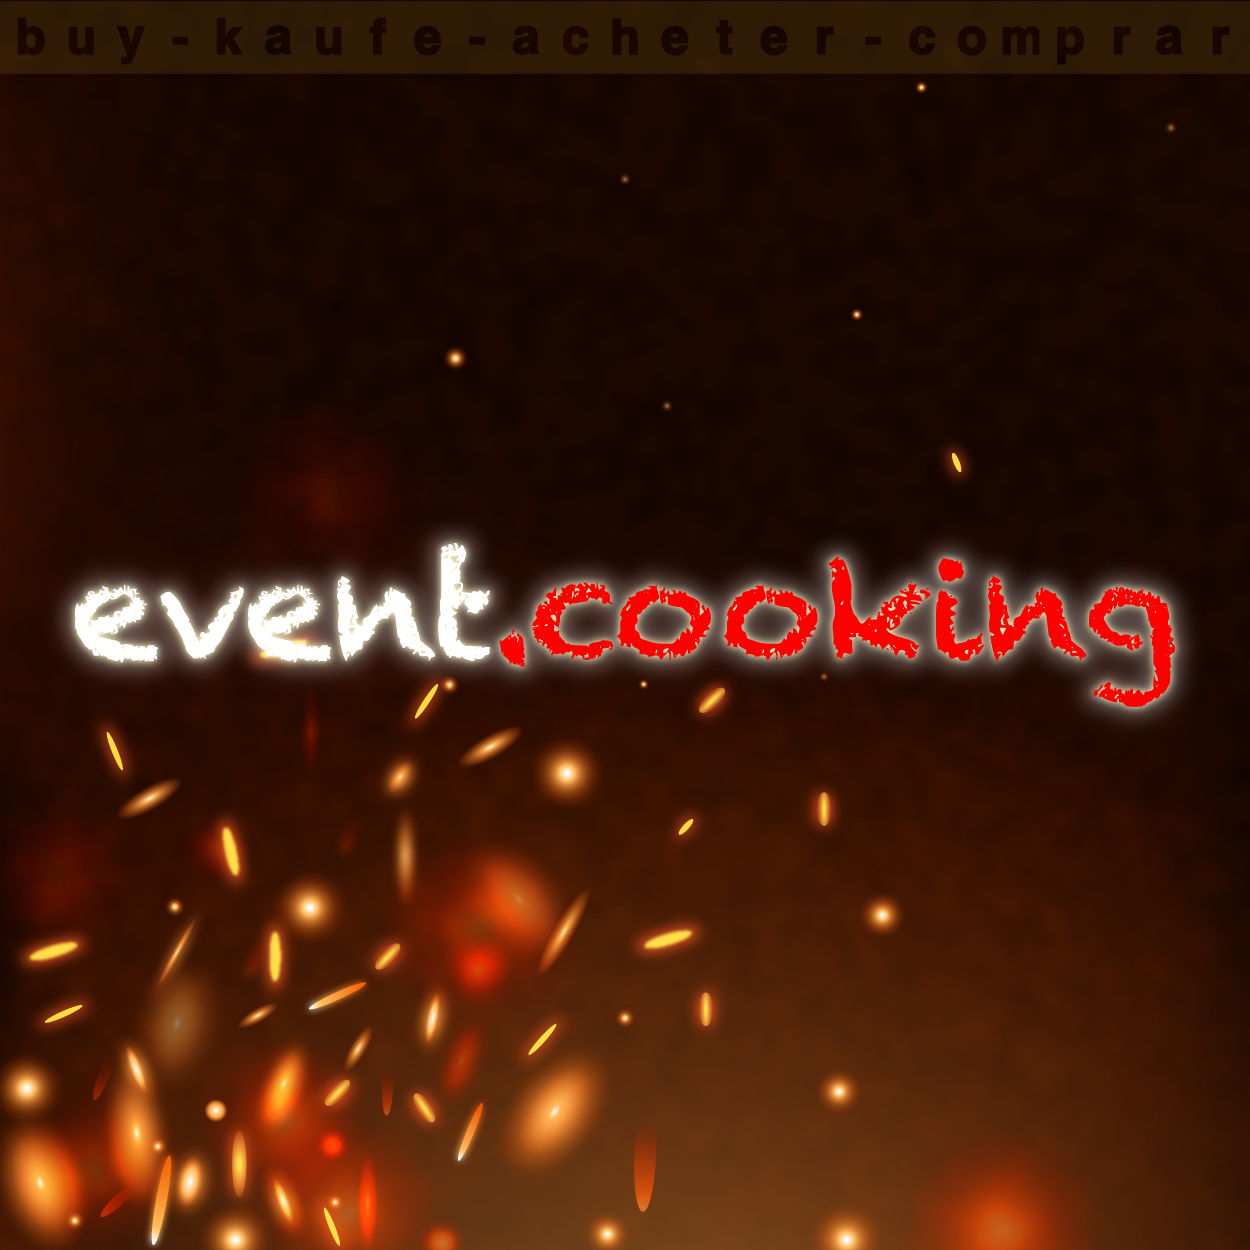 cookingevent.png